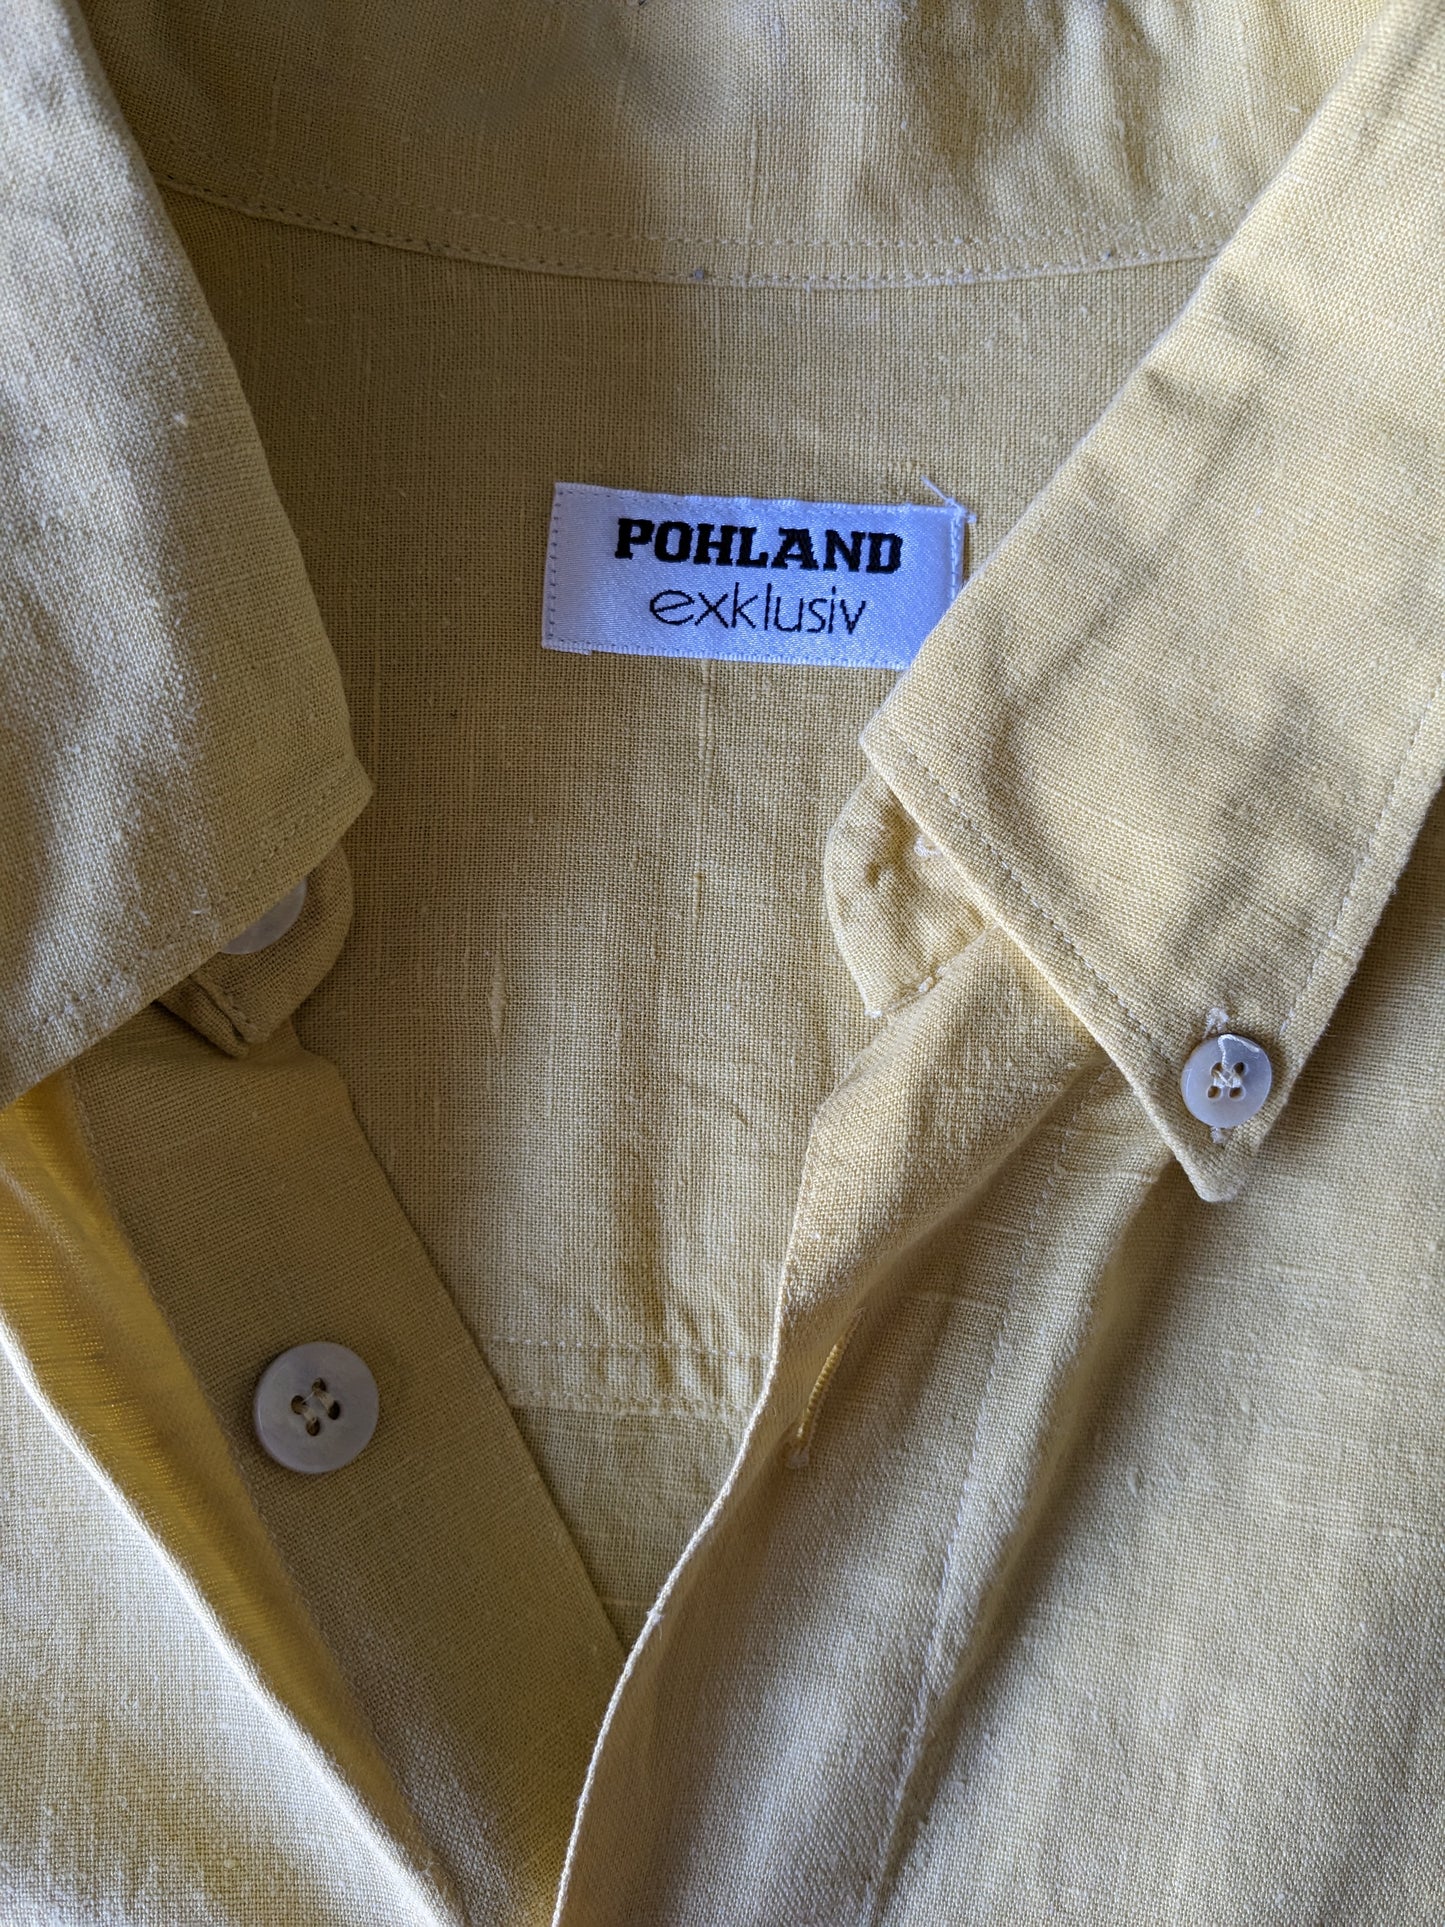 Camisa de lino exklusiv de Pohland Vintage con botones más grandes. Color amarillo. Tamaño 2xl / xxl.